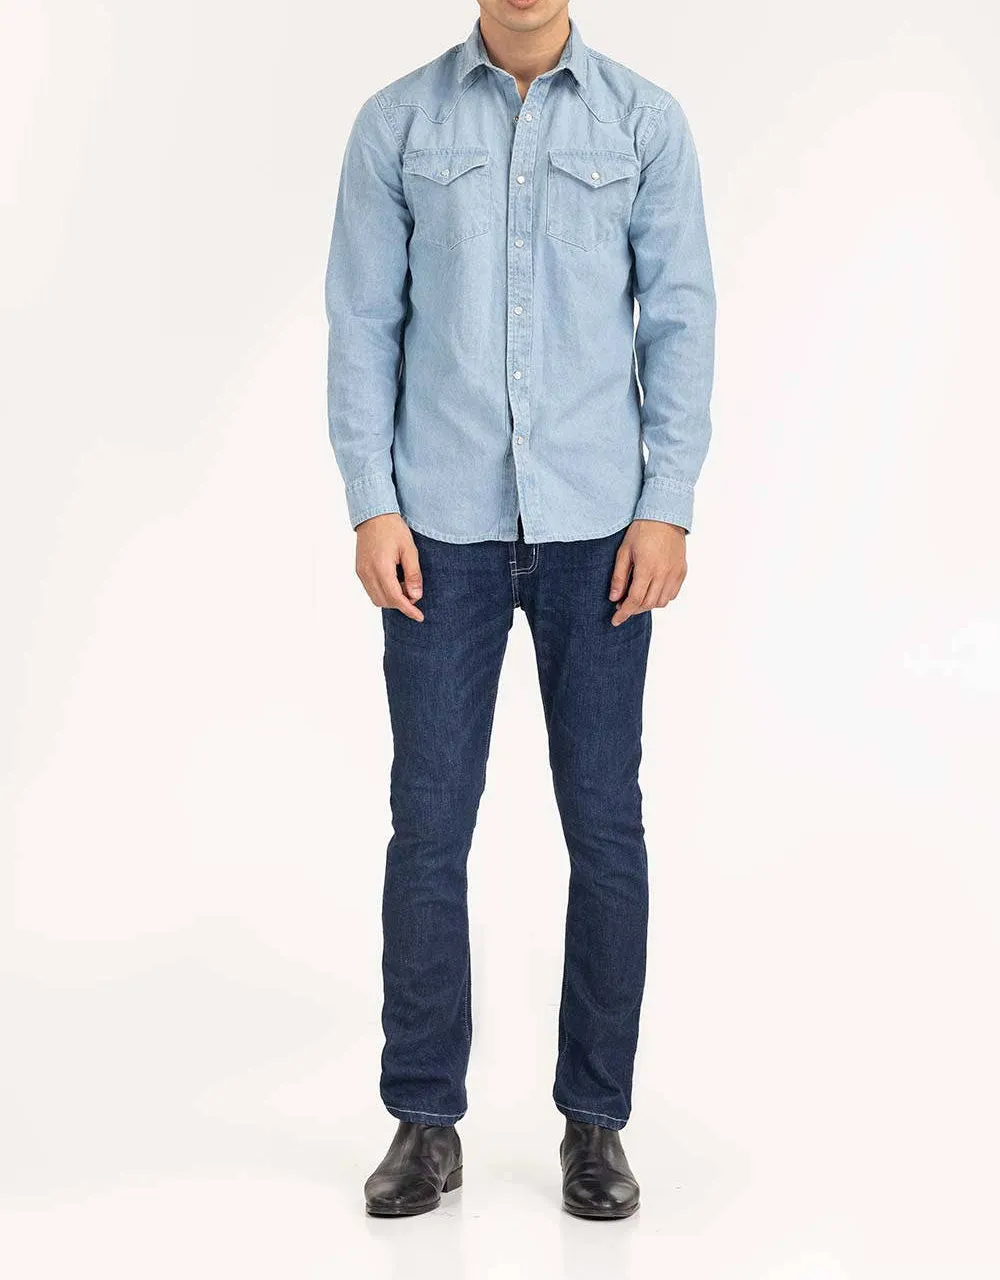 Nieuw Design Katoenen Slim Fit Shirts Voor Beste Prijs Mannen Rijke Kwaliteit Custom Design Causaal Shirt